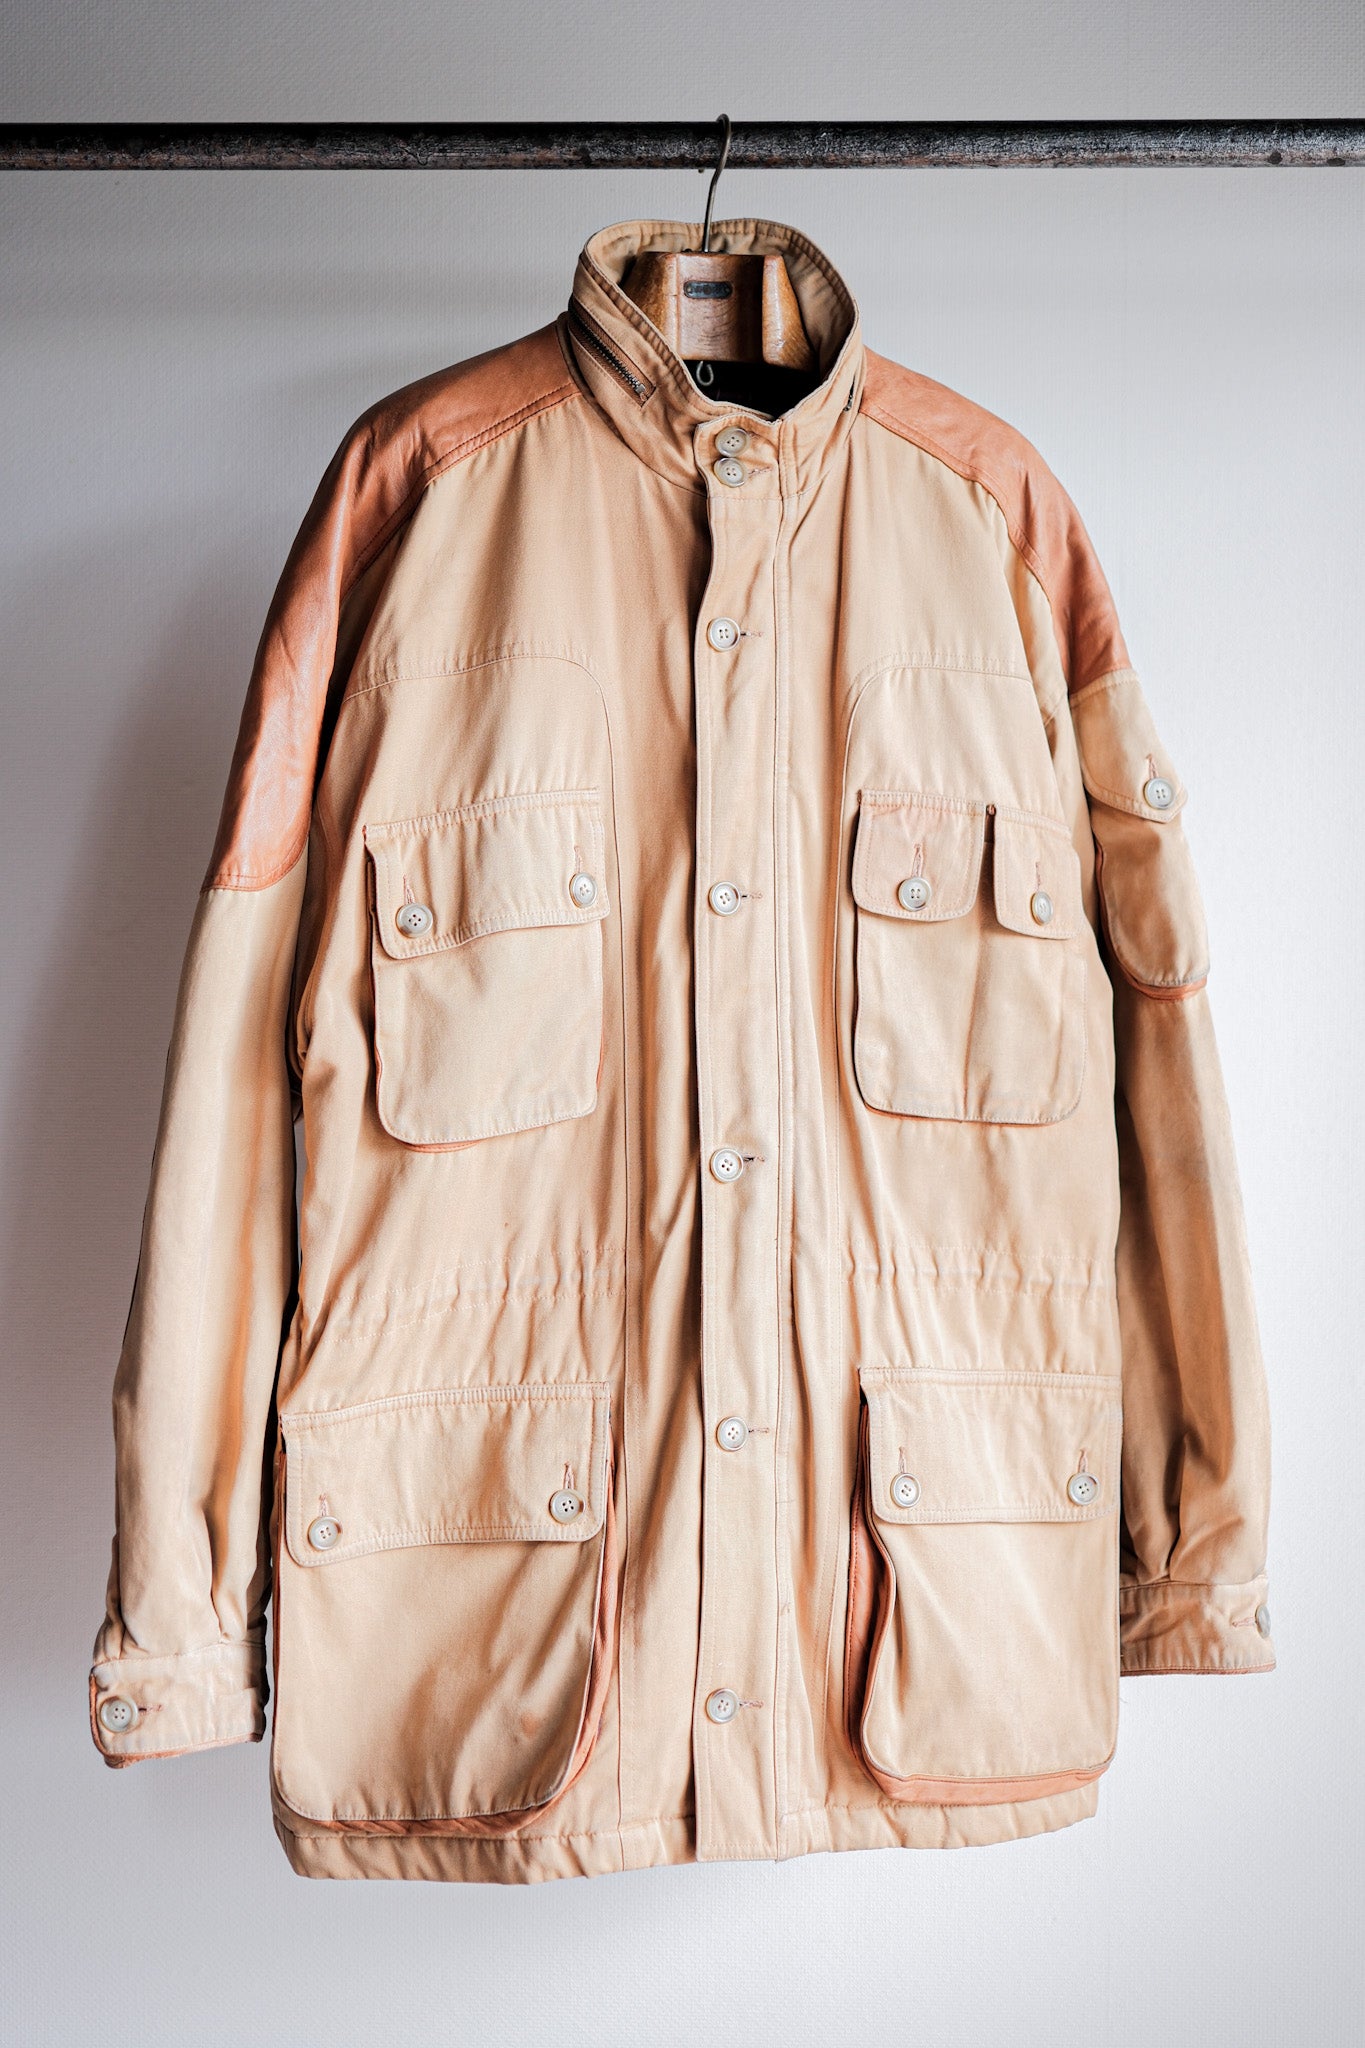 [〜90年代] Willis＆Geiger棉野生動物園夾克尺寸。